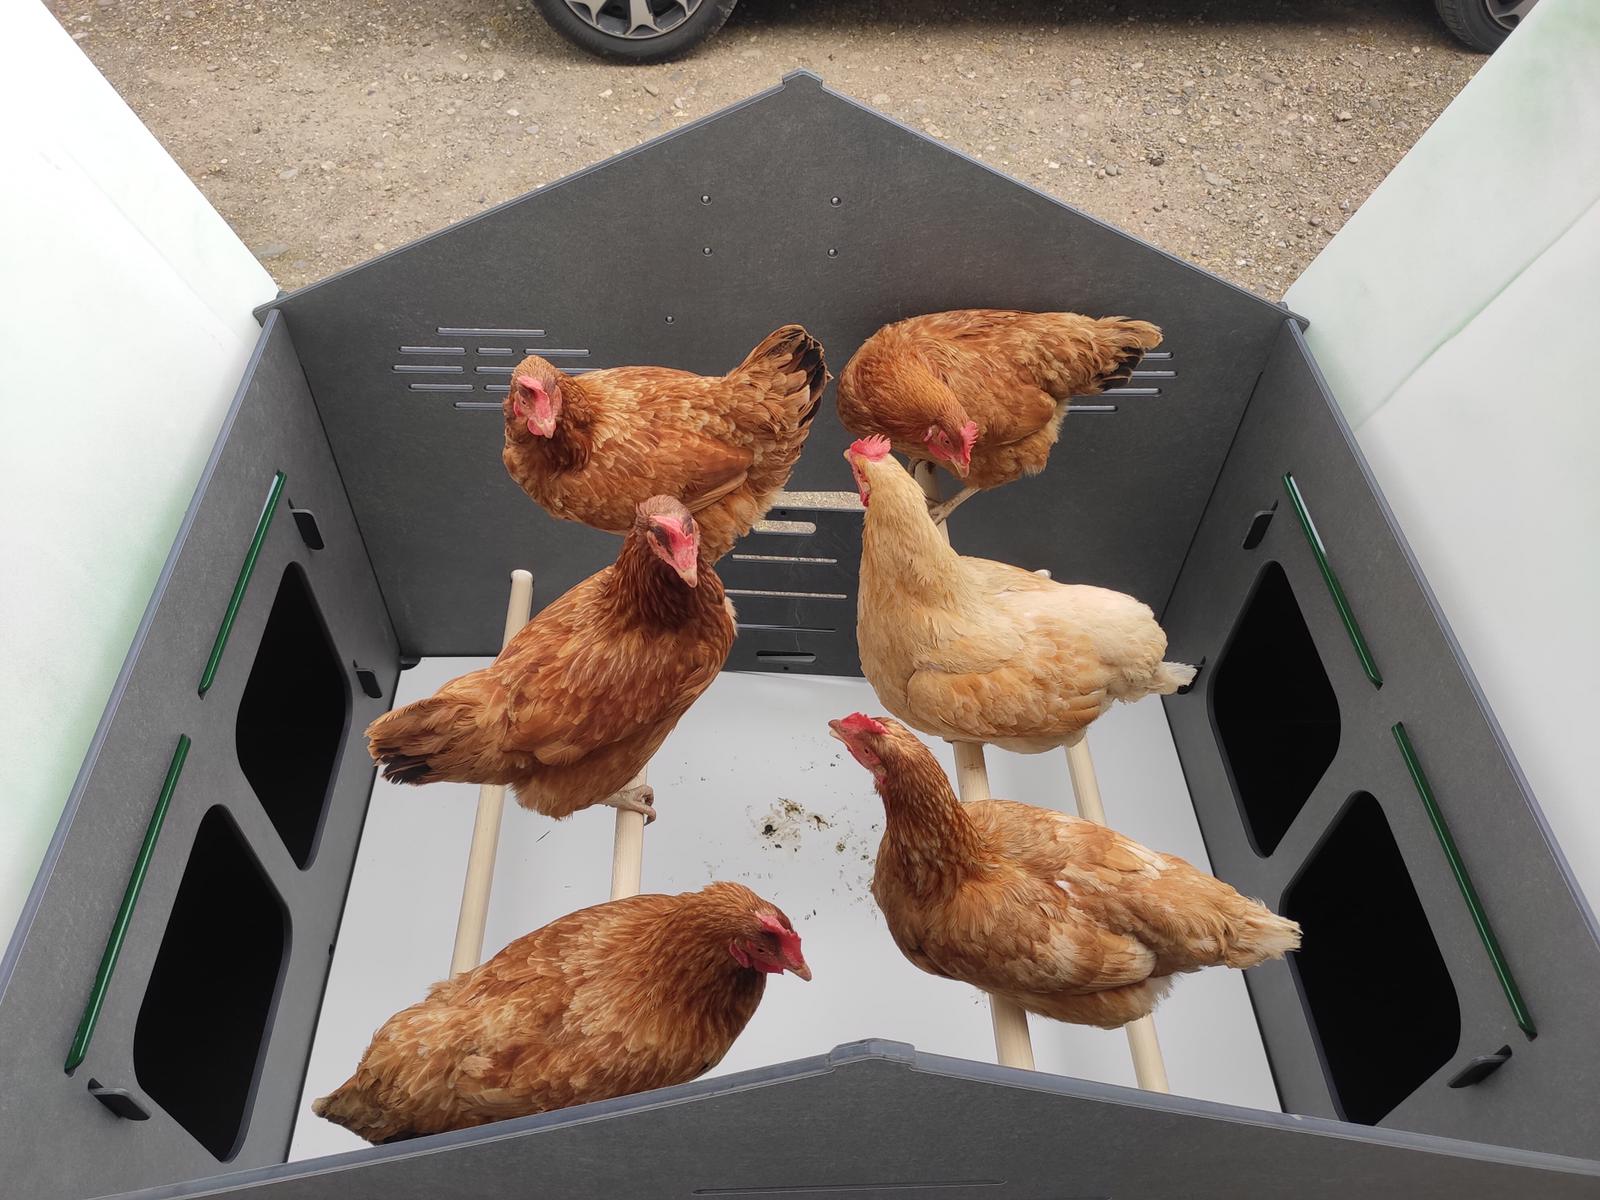 Grande pollaio per 15 / 20 galline ovaiole con 4 nidi esterni 4 posatoi  POLLY CHALET 4XL - Cucciolotta